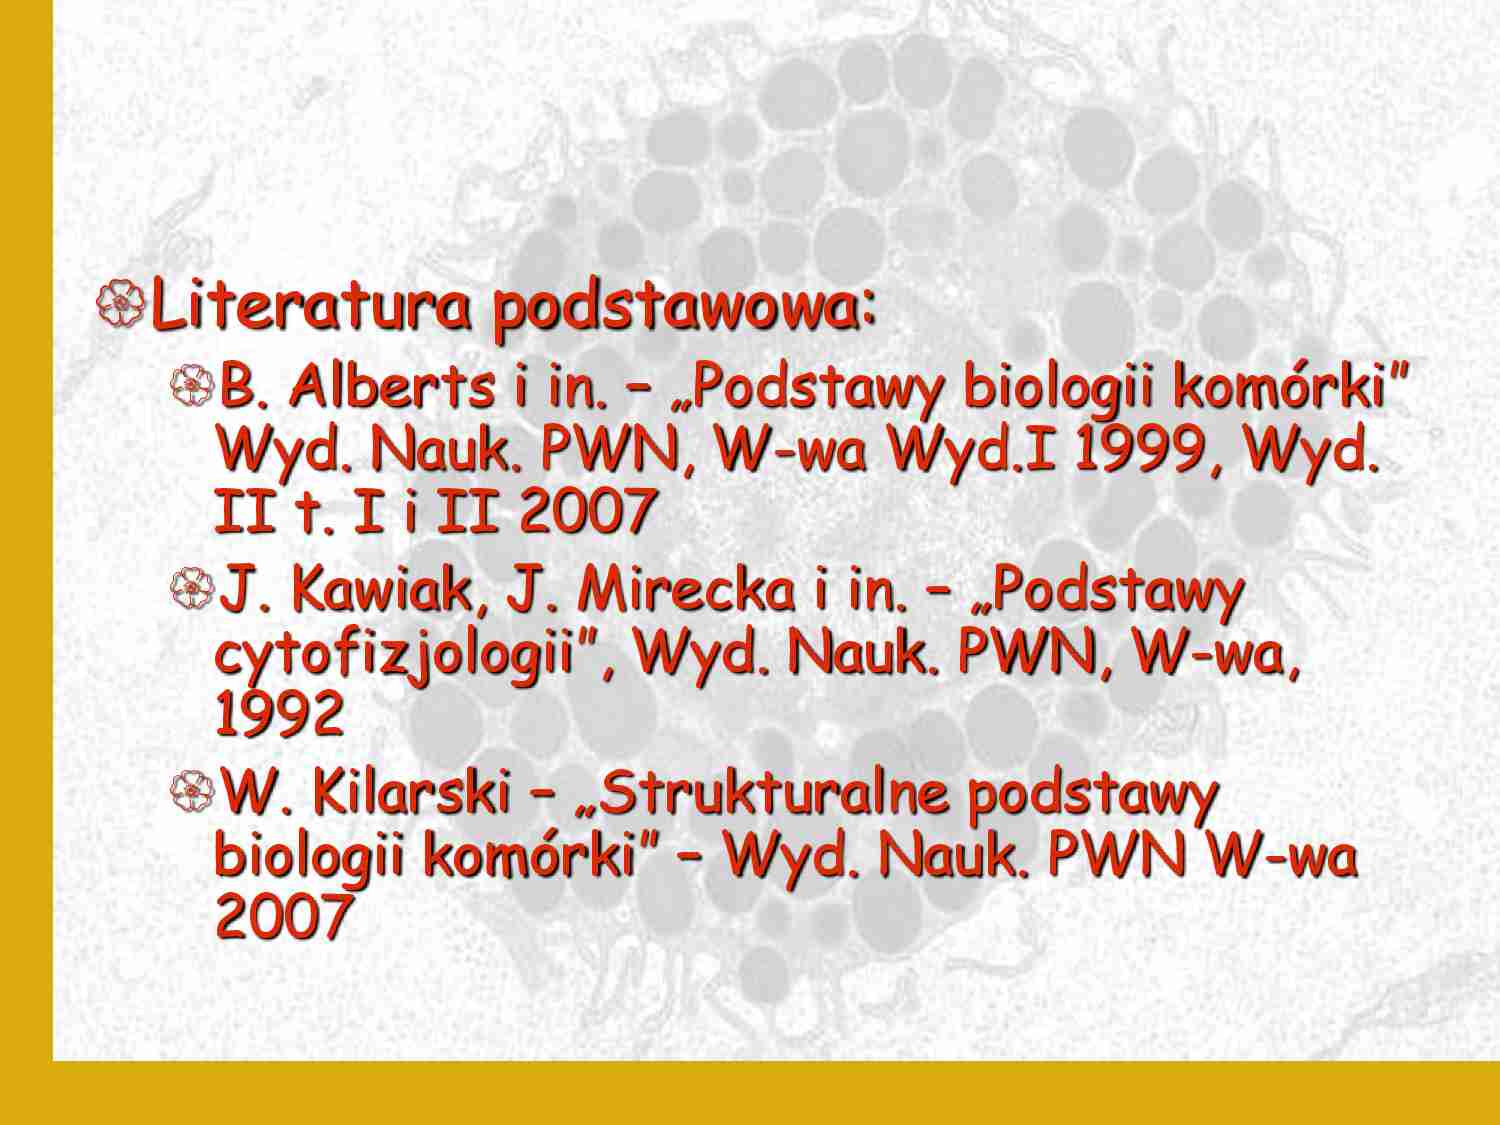 Biologia komórki - wykład 1 - strona 1